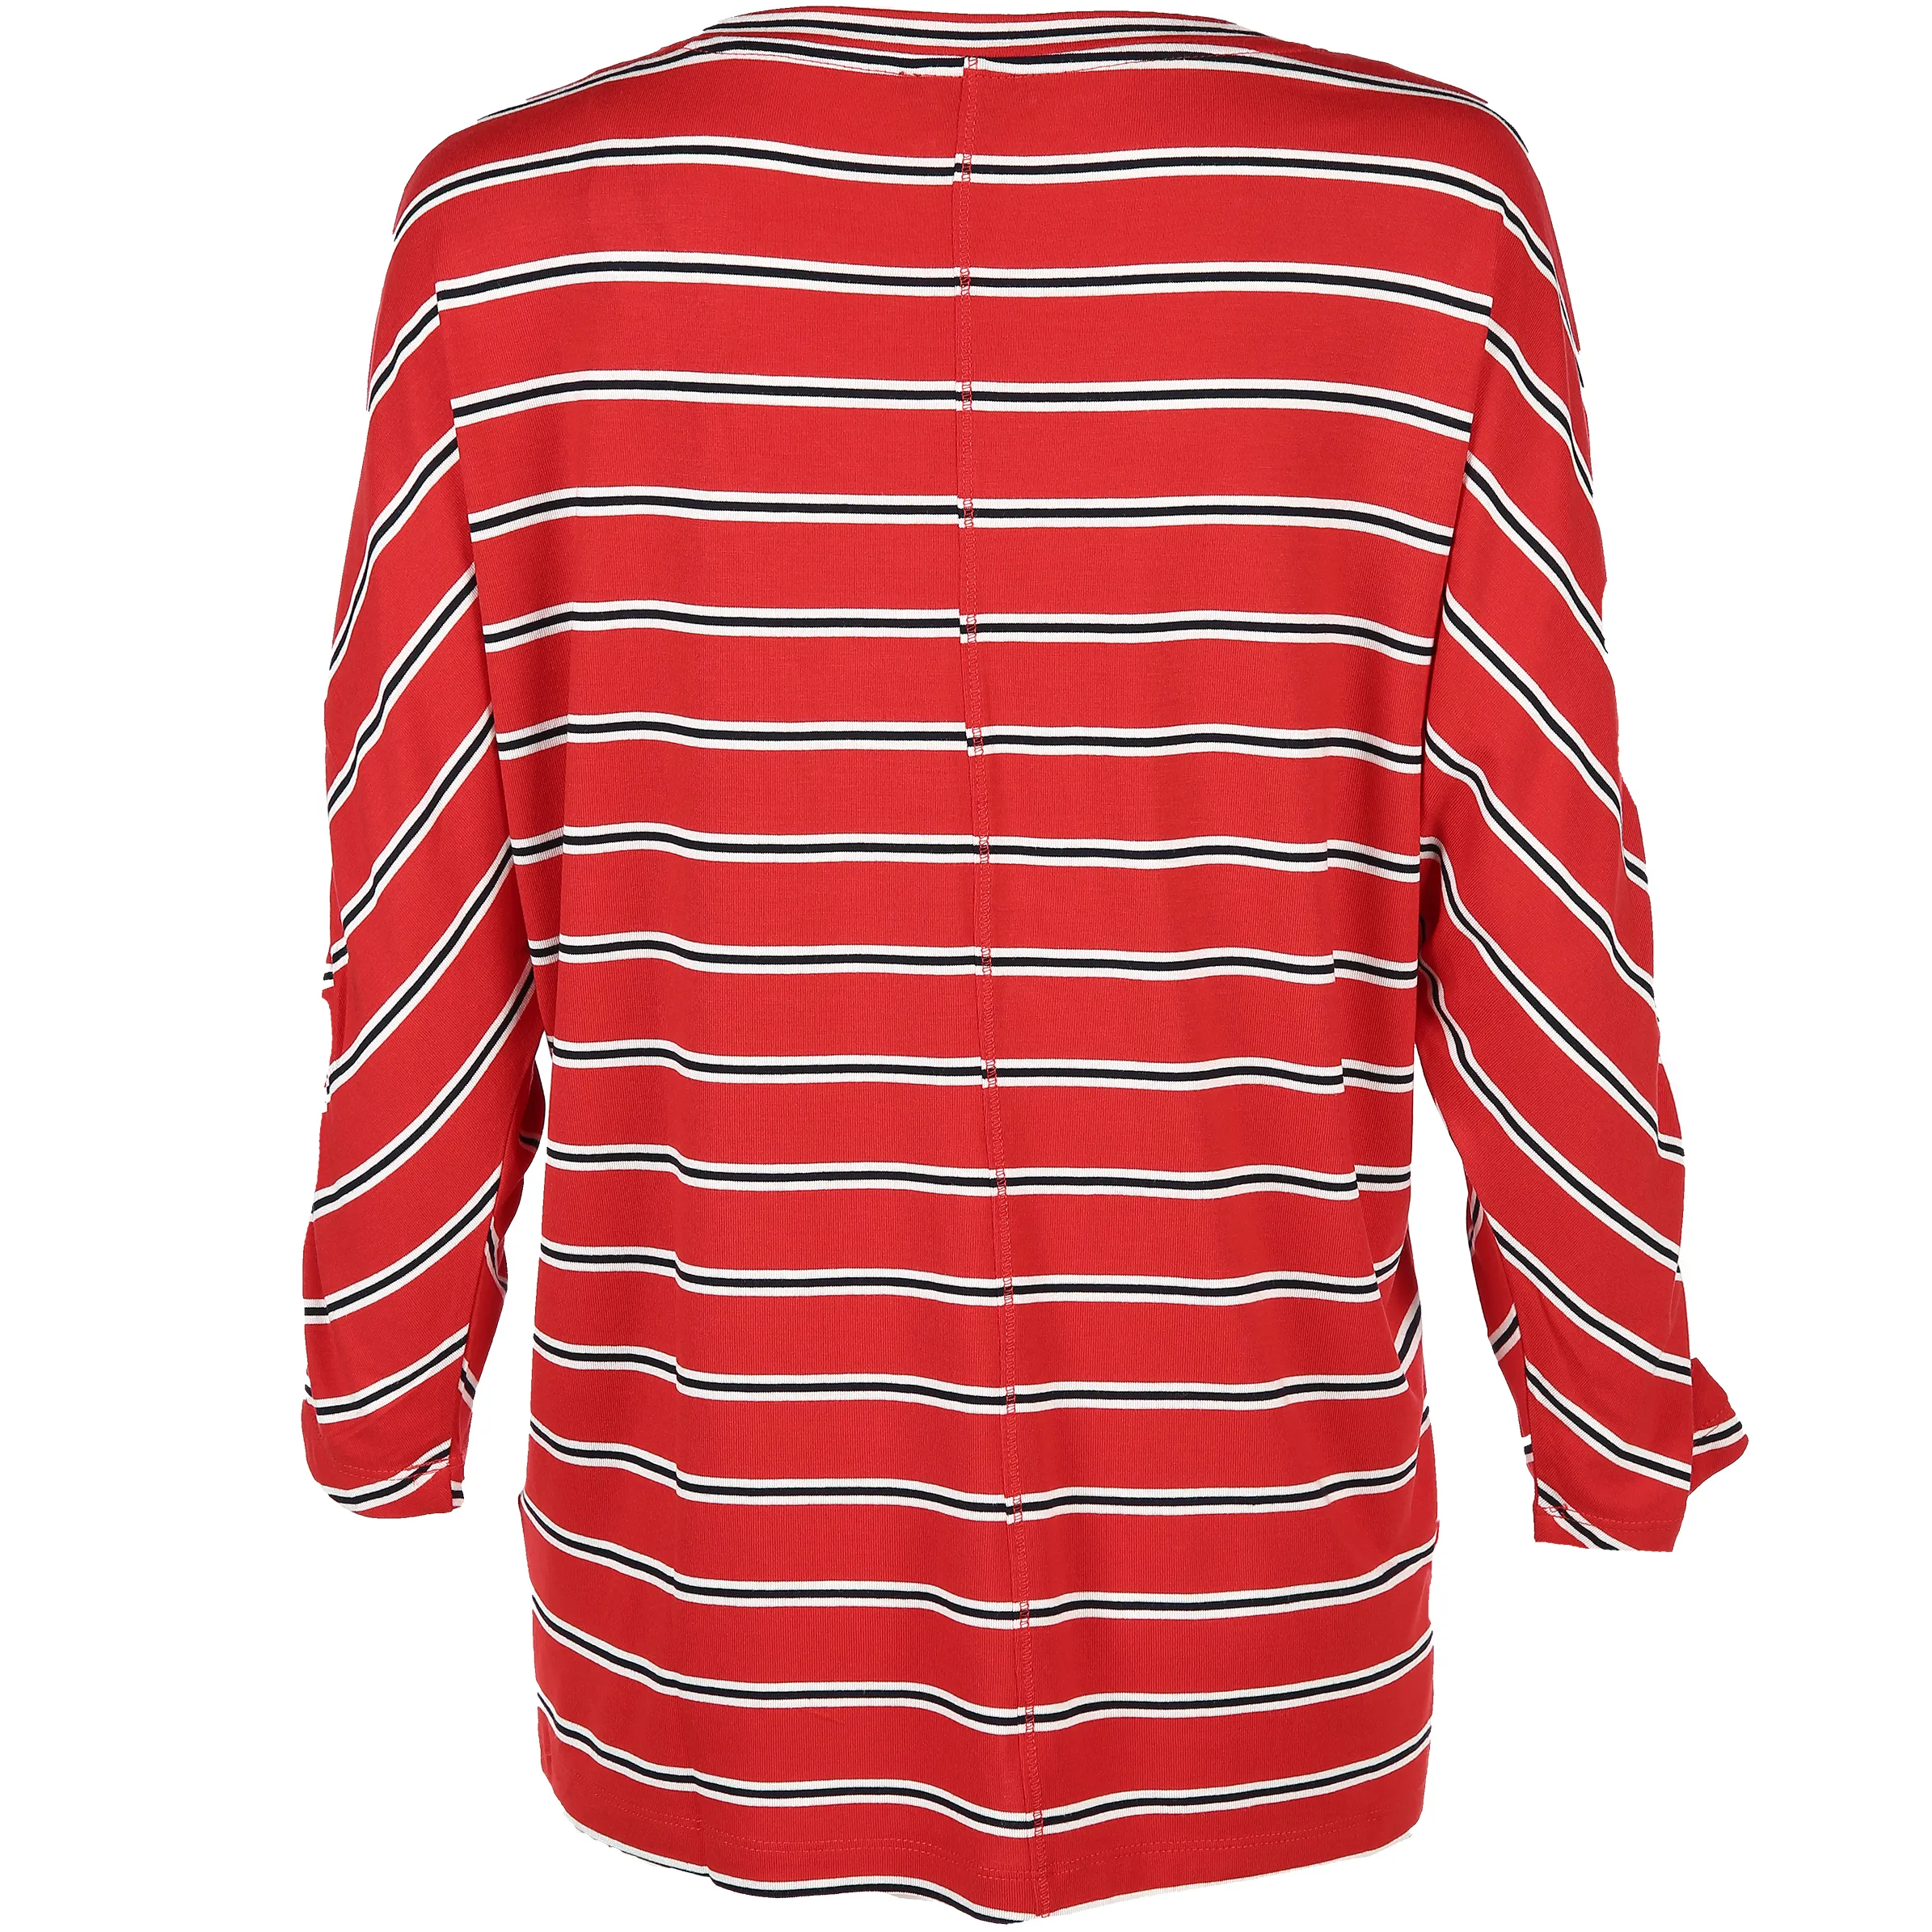 Tom Tailor 1004857 trendy stripe shirt Rot 799677 13406 2